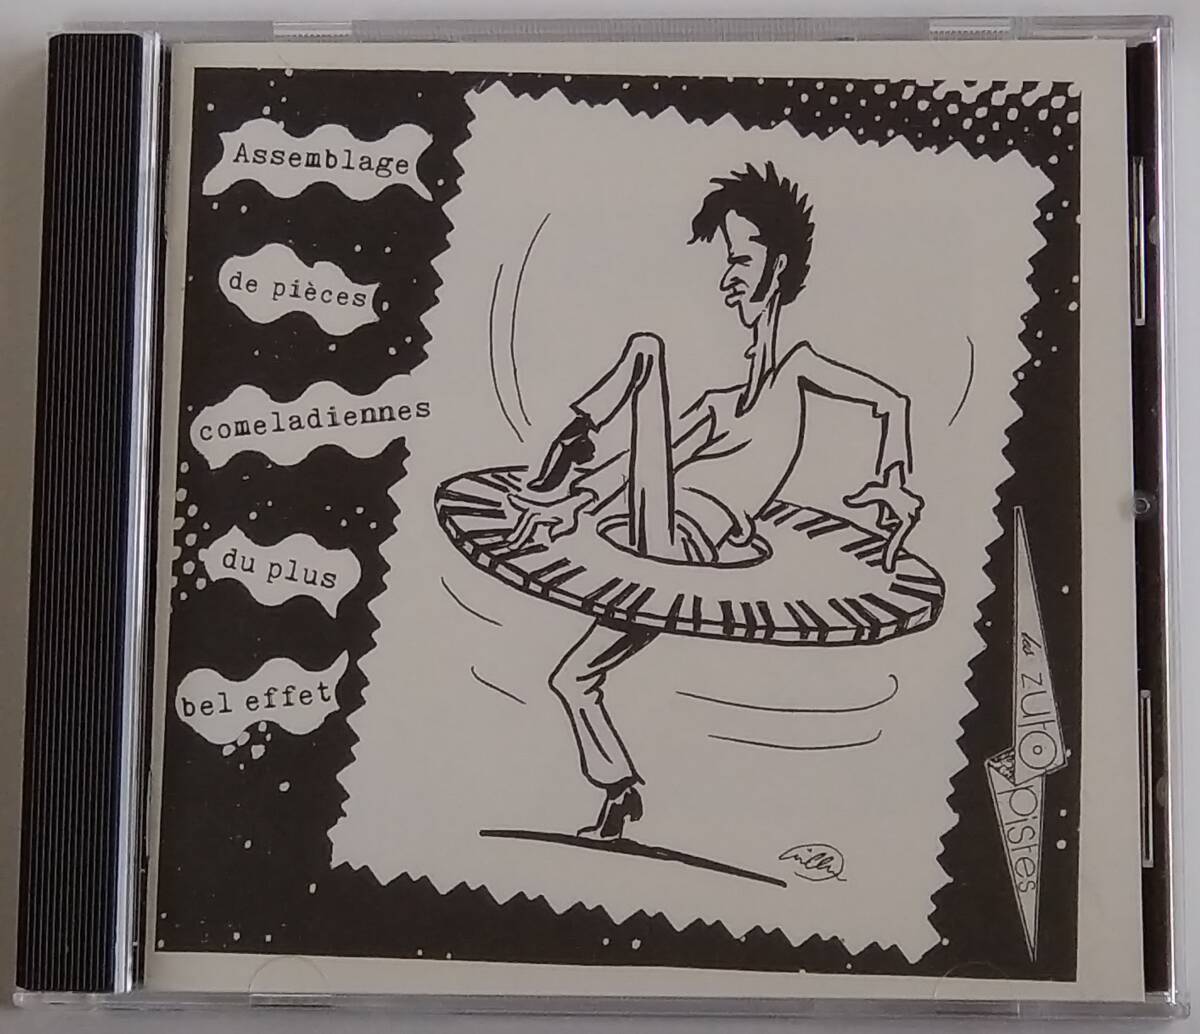 【CD】 Various Artists - Assemblage de pieces comeladiennes du plus bel effet / 海外盤 / 送料無料_画像1